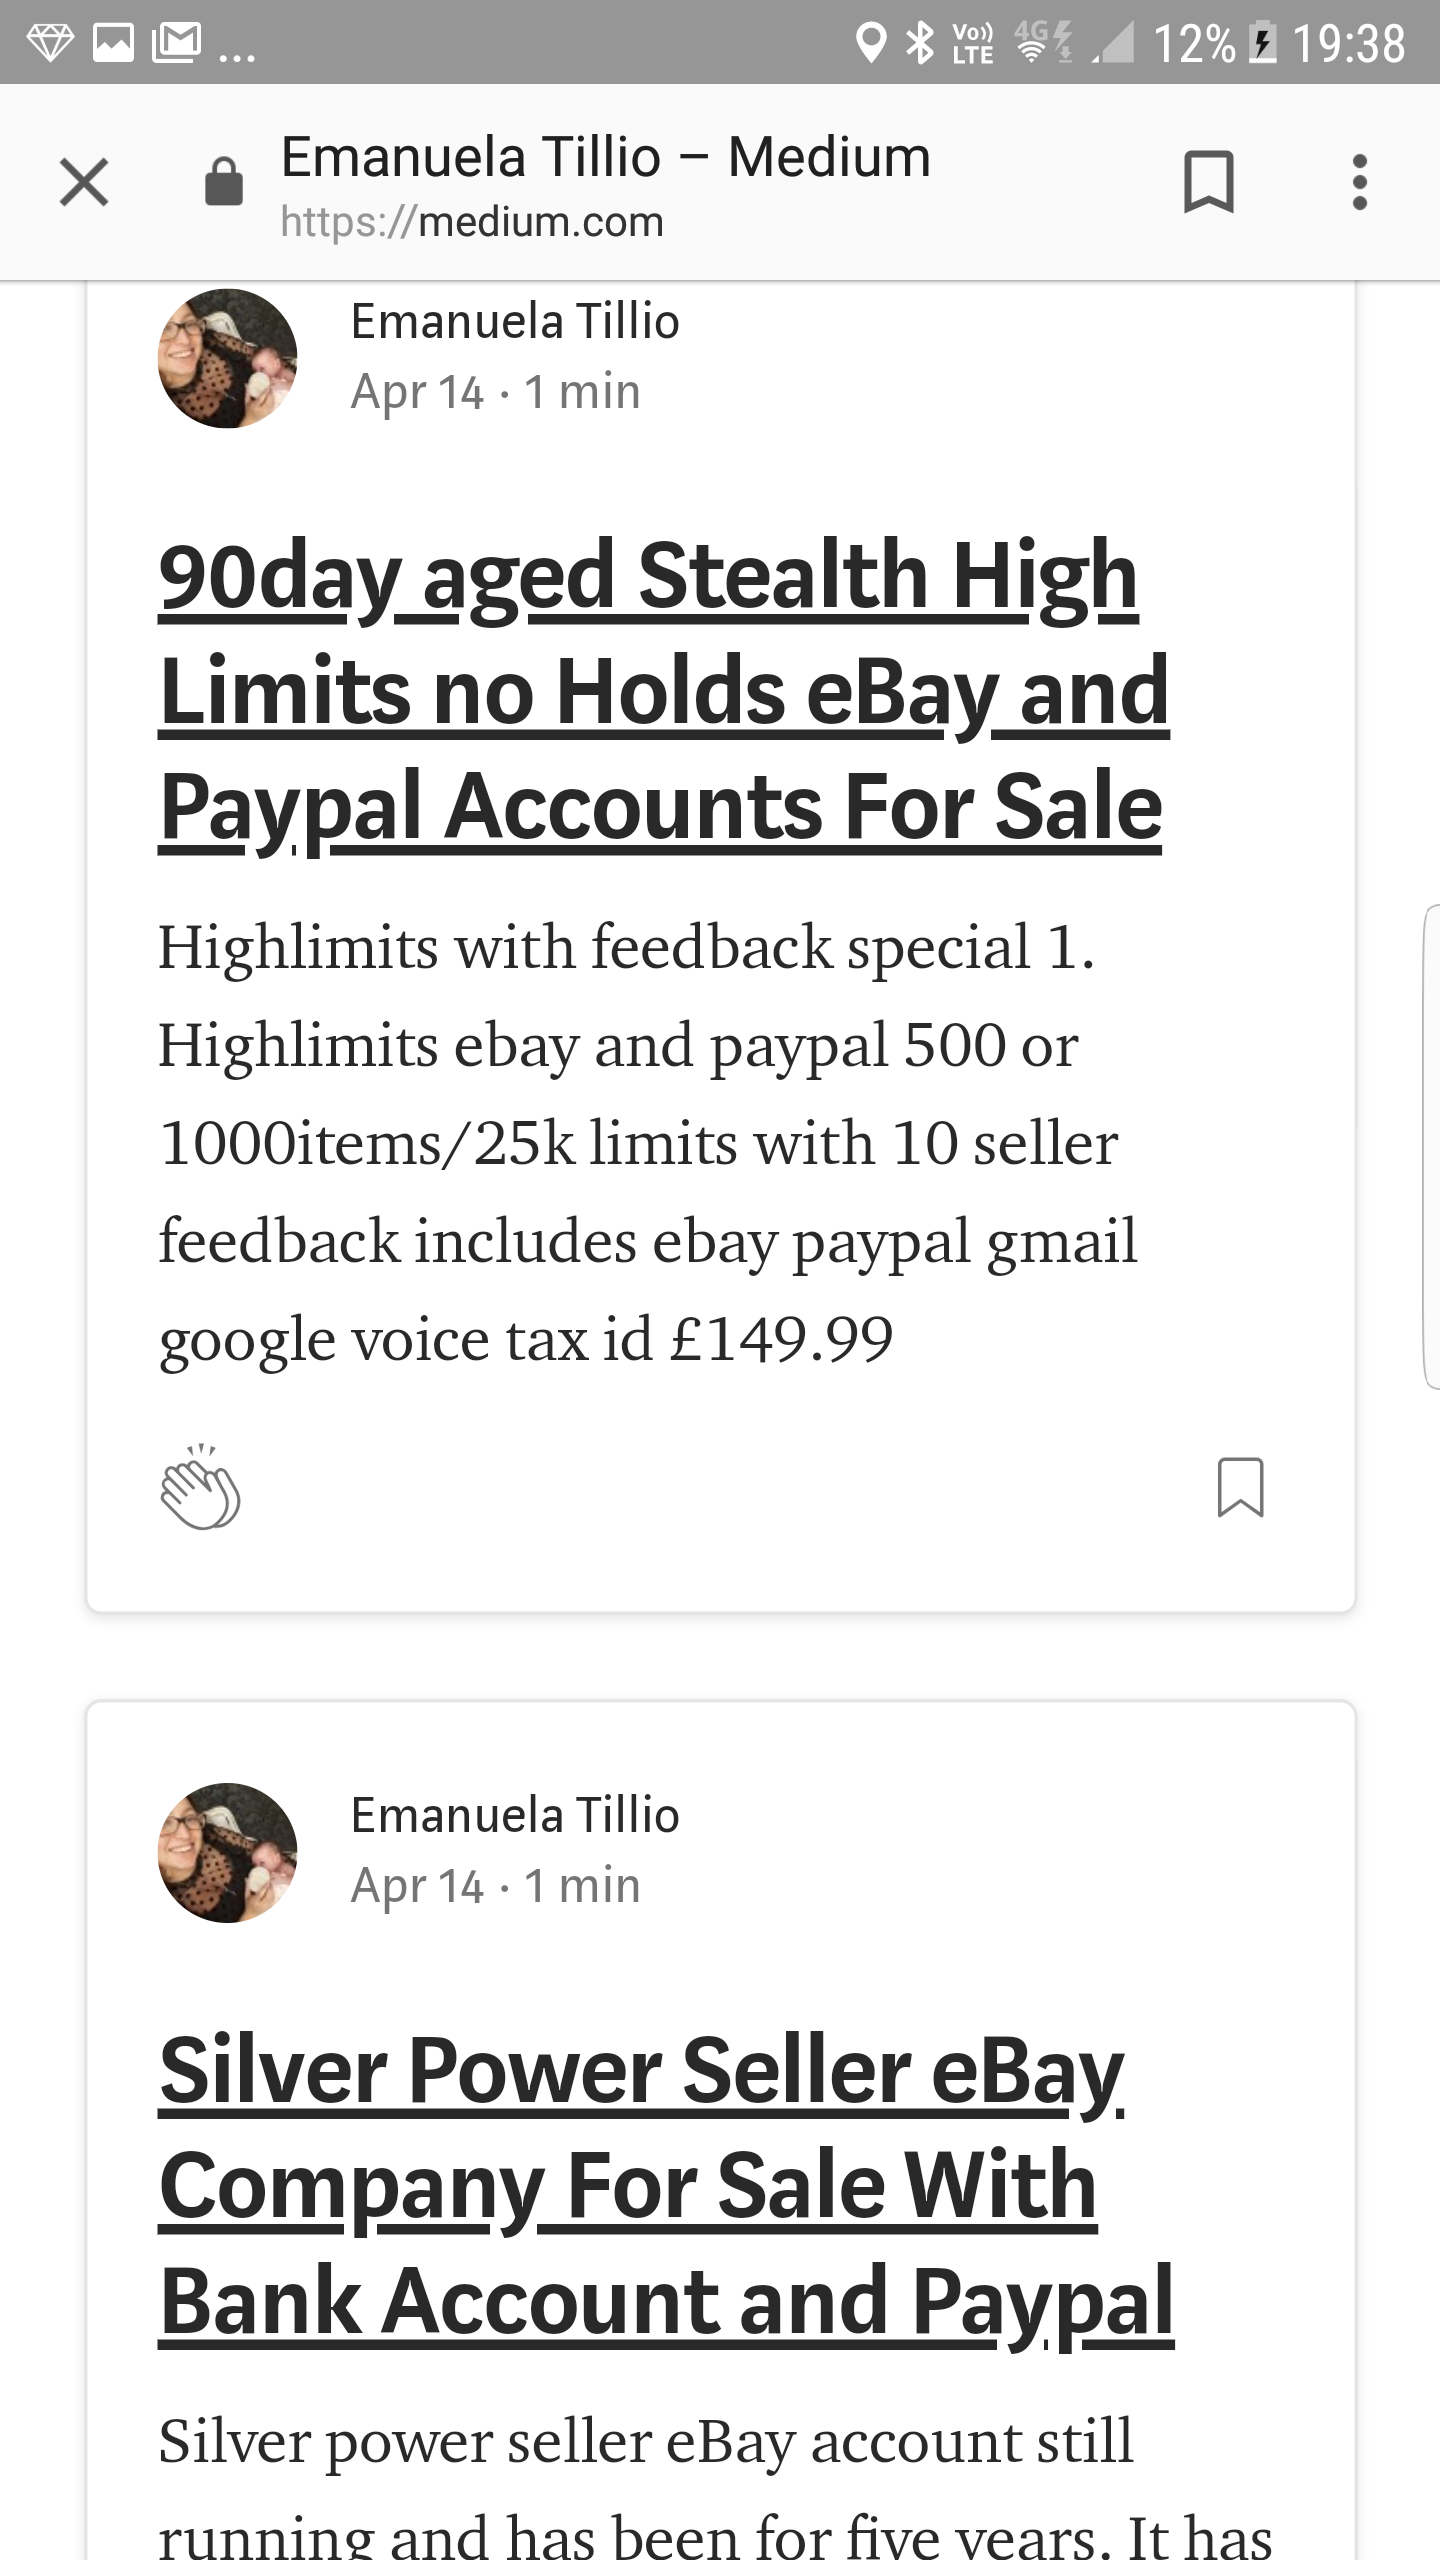 Ebay scammer Emanuela de tillio of collecorvino